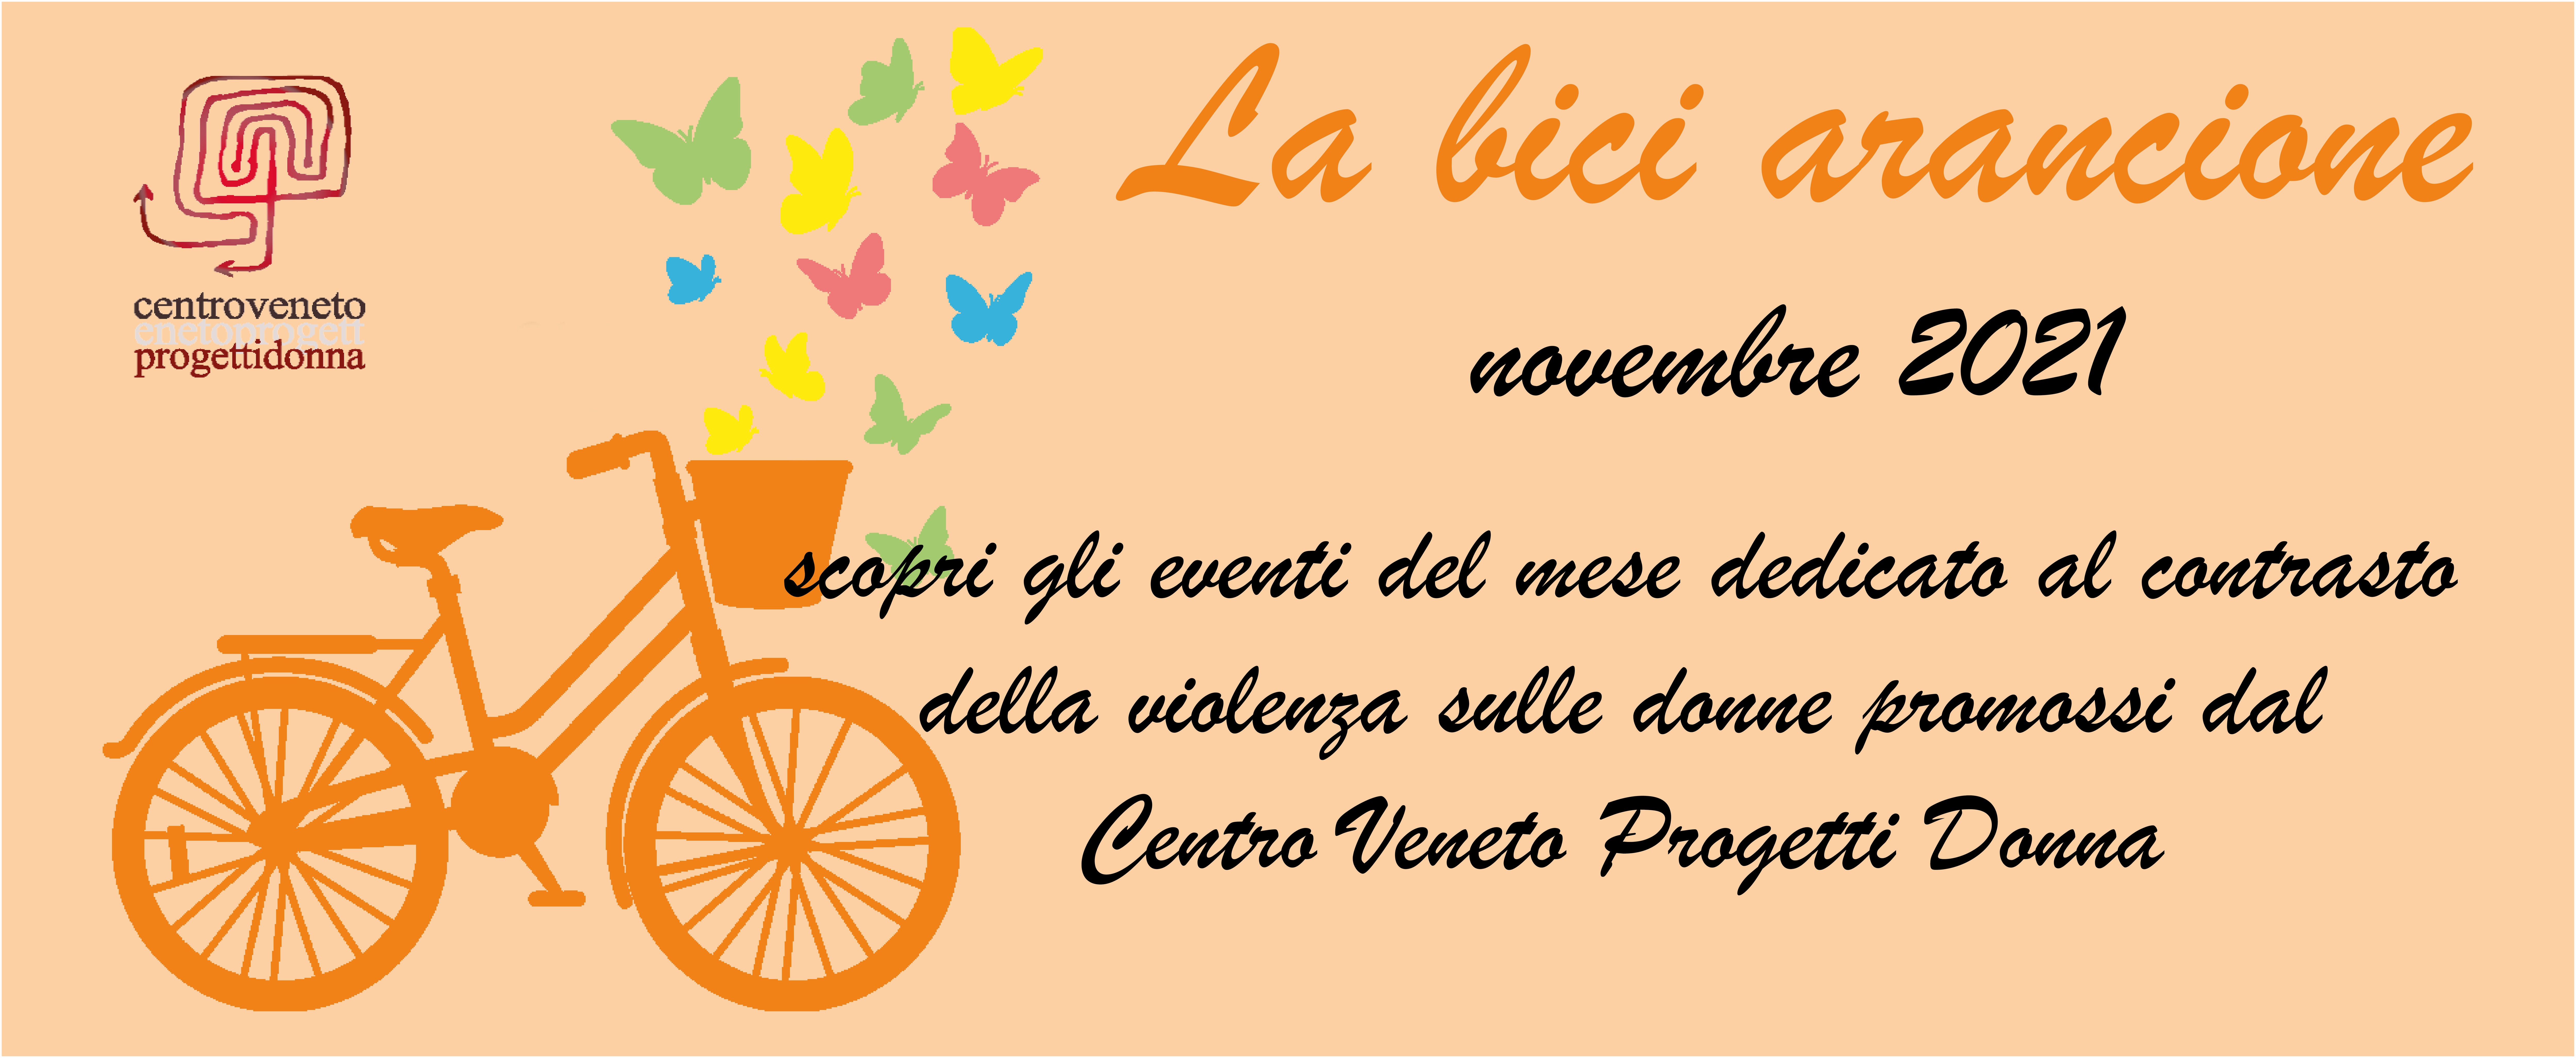 La Bici Arancione - tutti gli eventi del nostro 25 novembre 2021